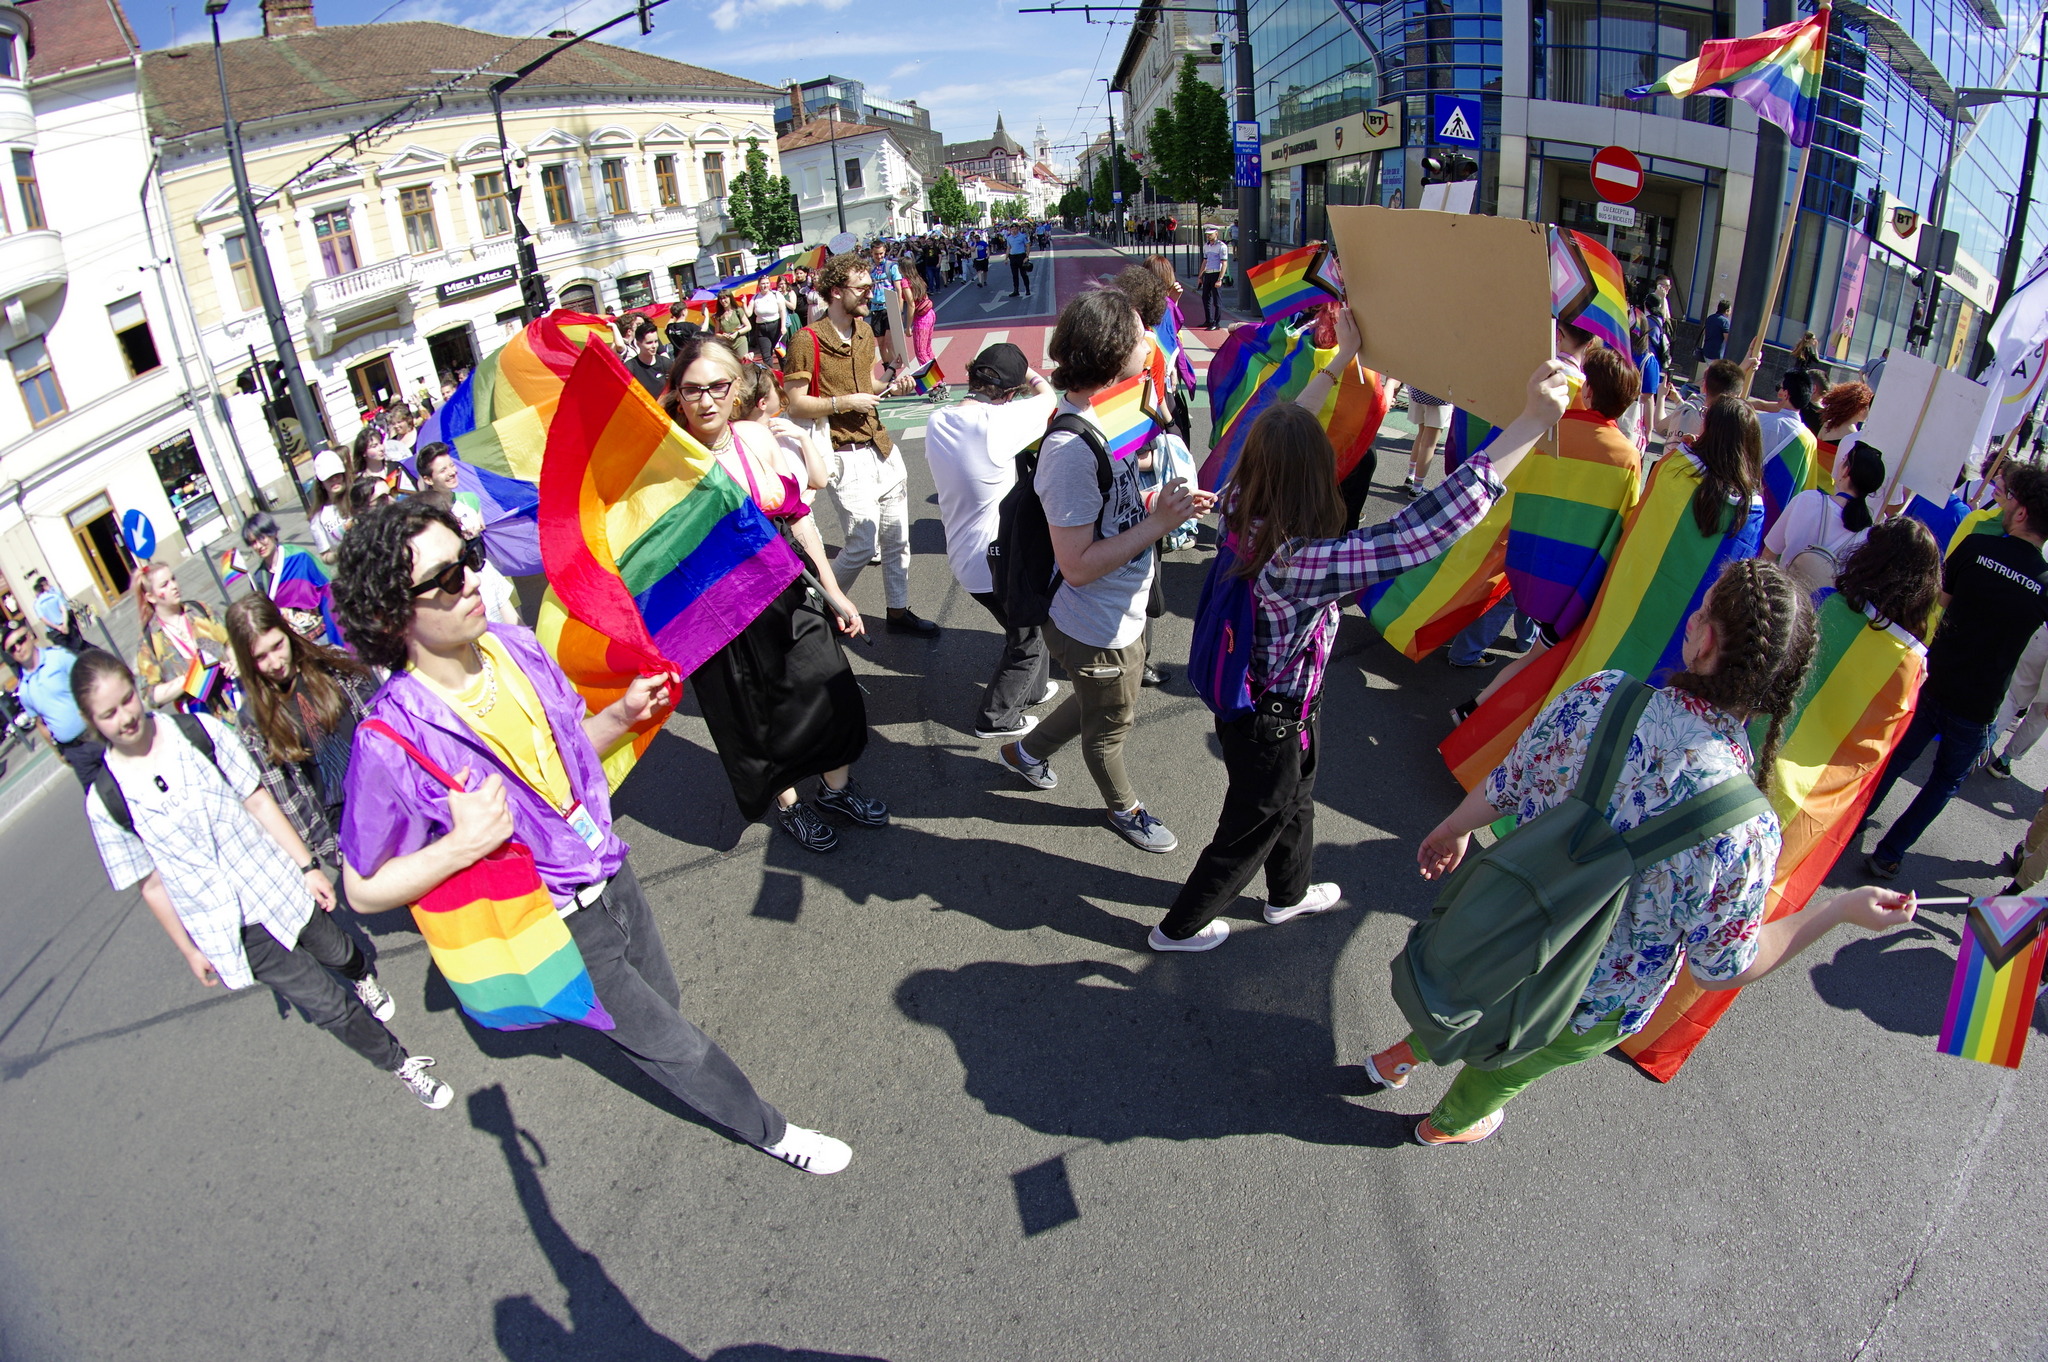 Kolozsvár Pride: örömünnep, emlékezés, tiltakozás